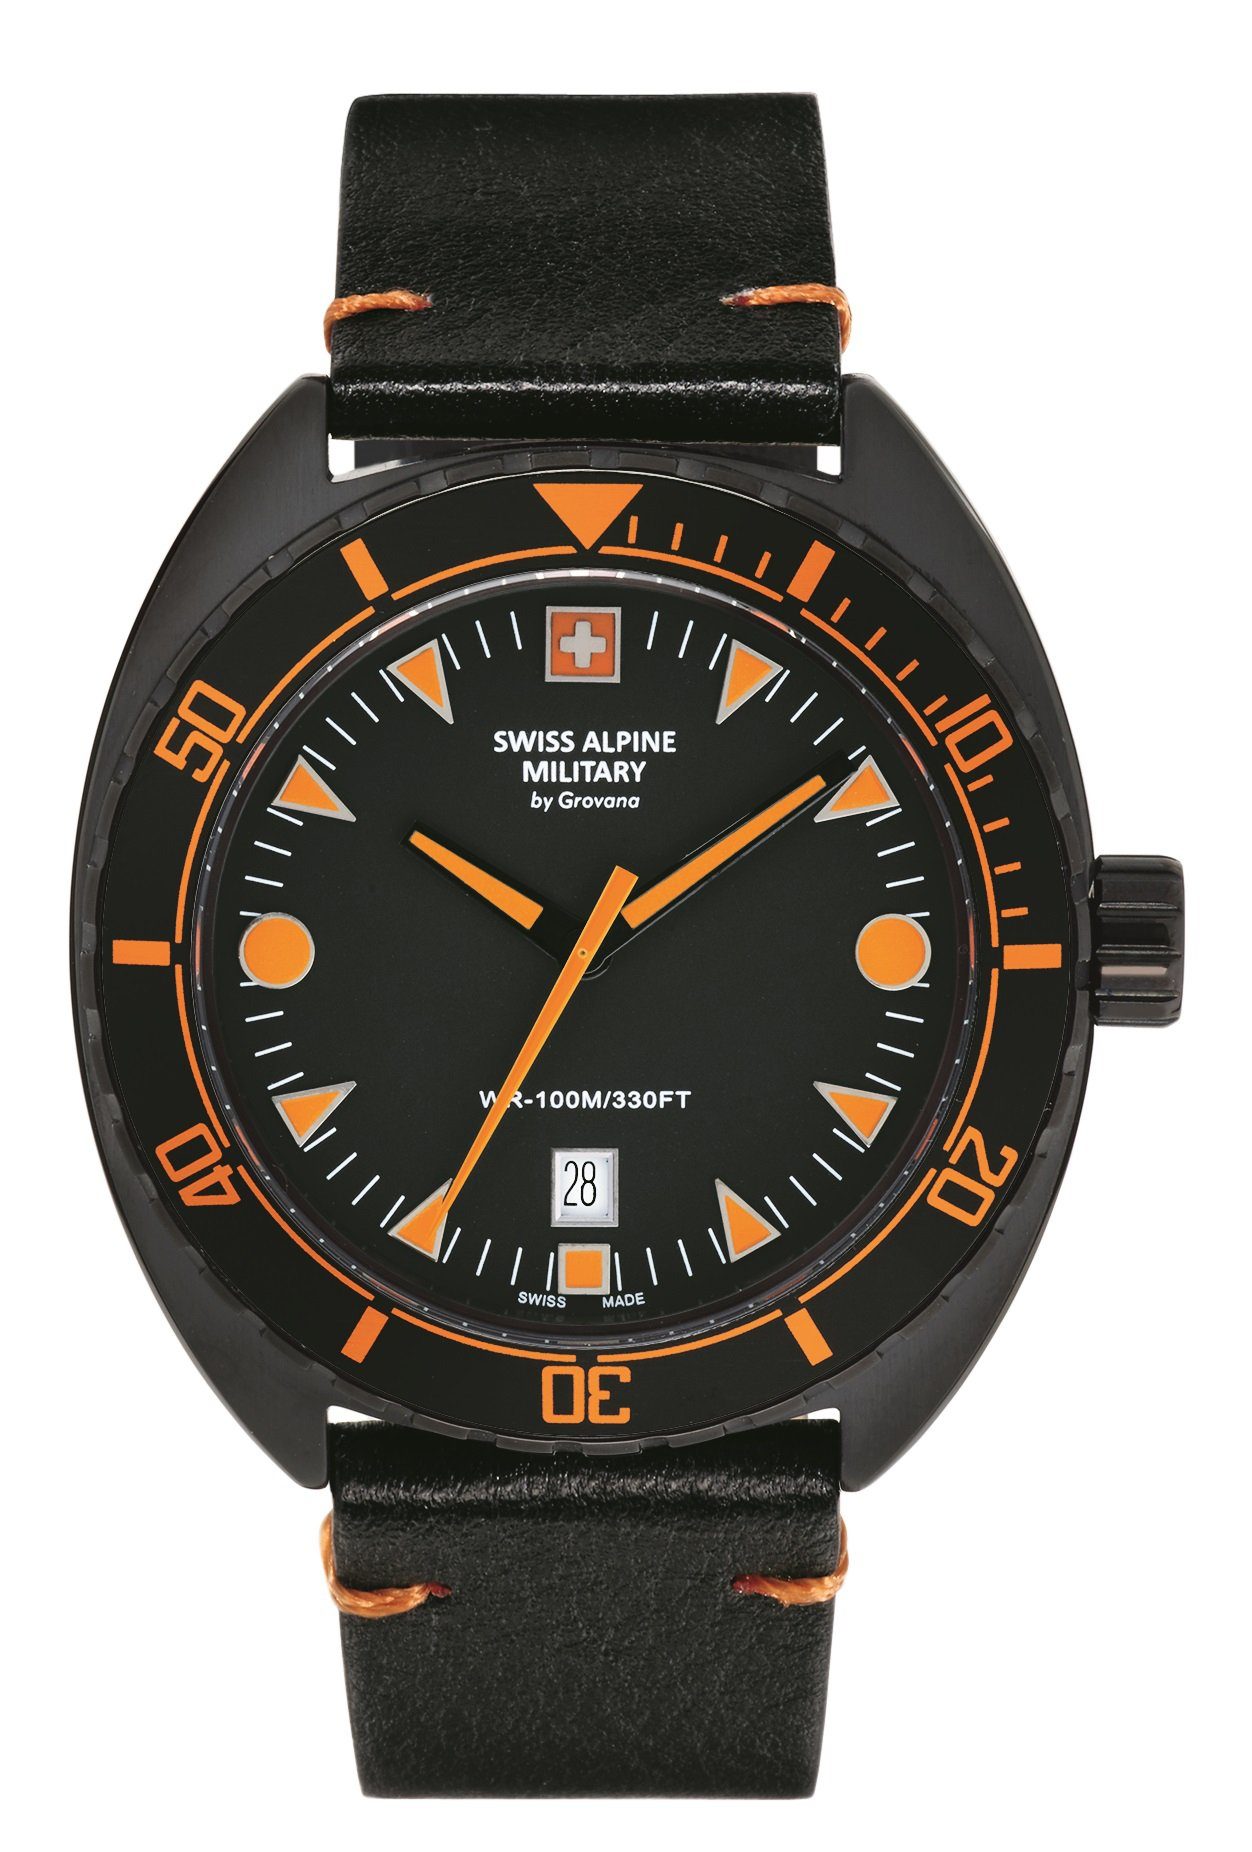 Swiss Alpine Military 7066.9639 watch